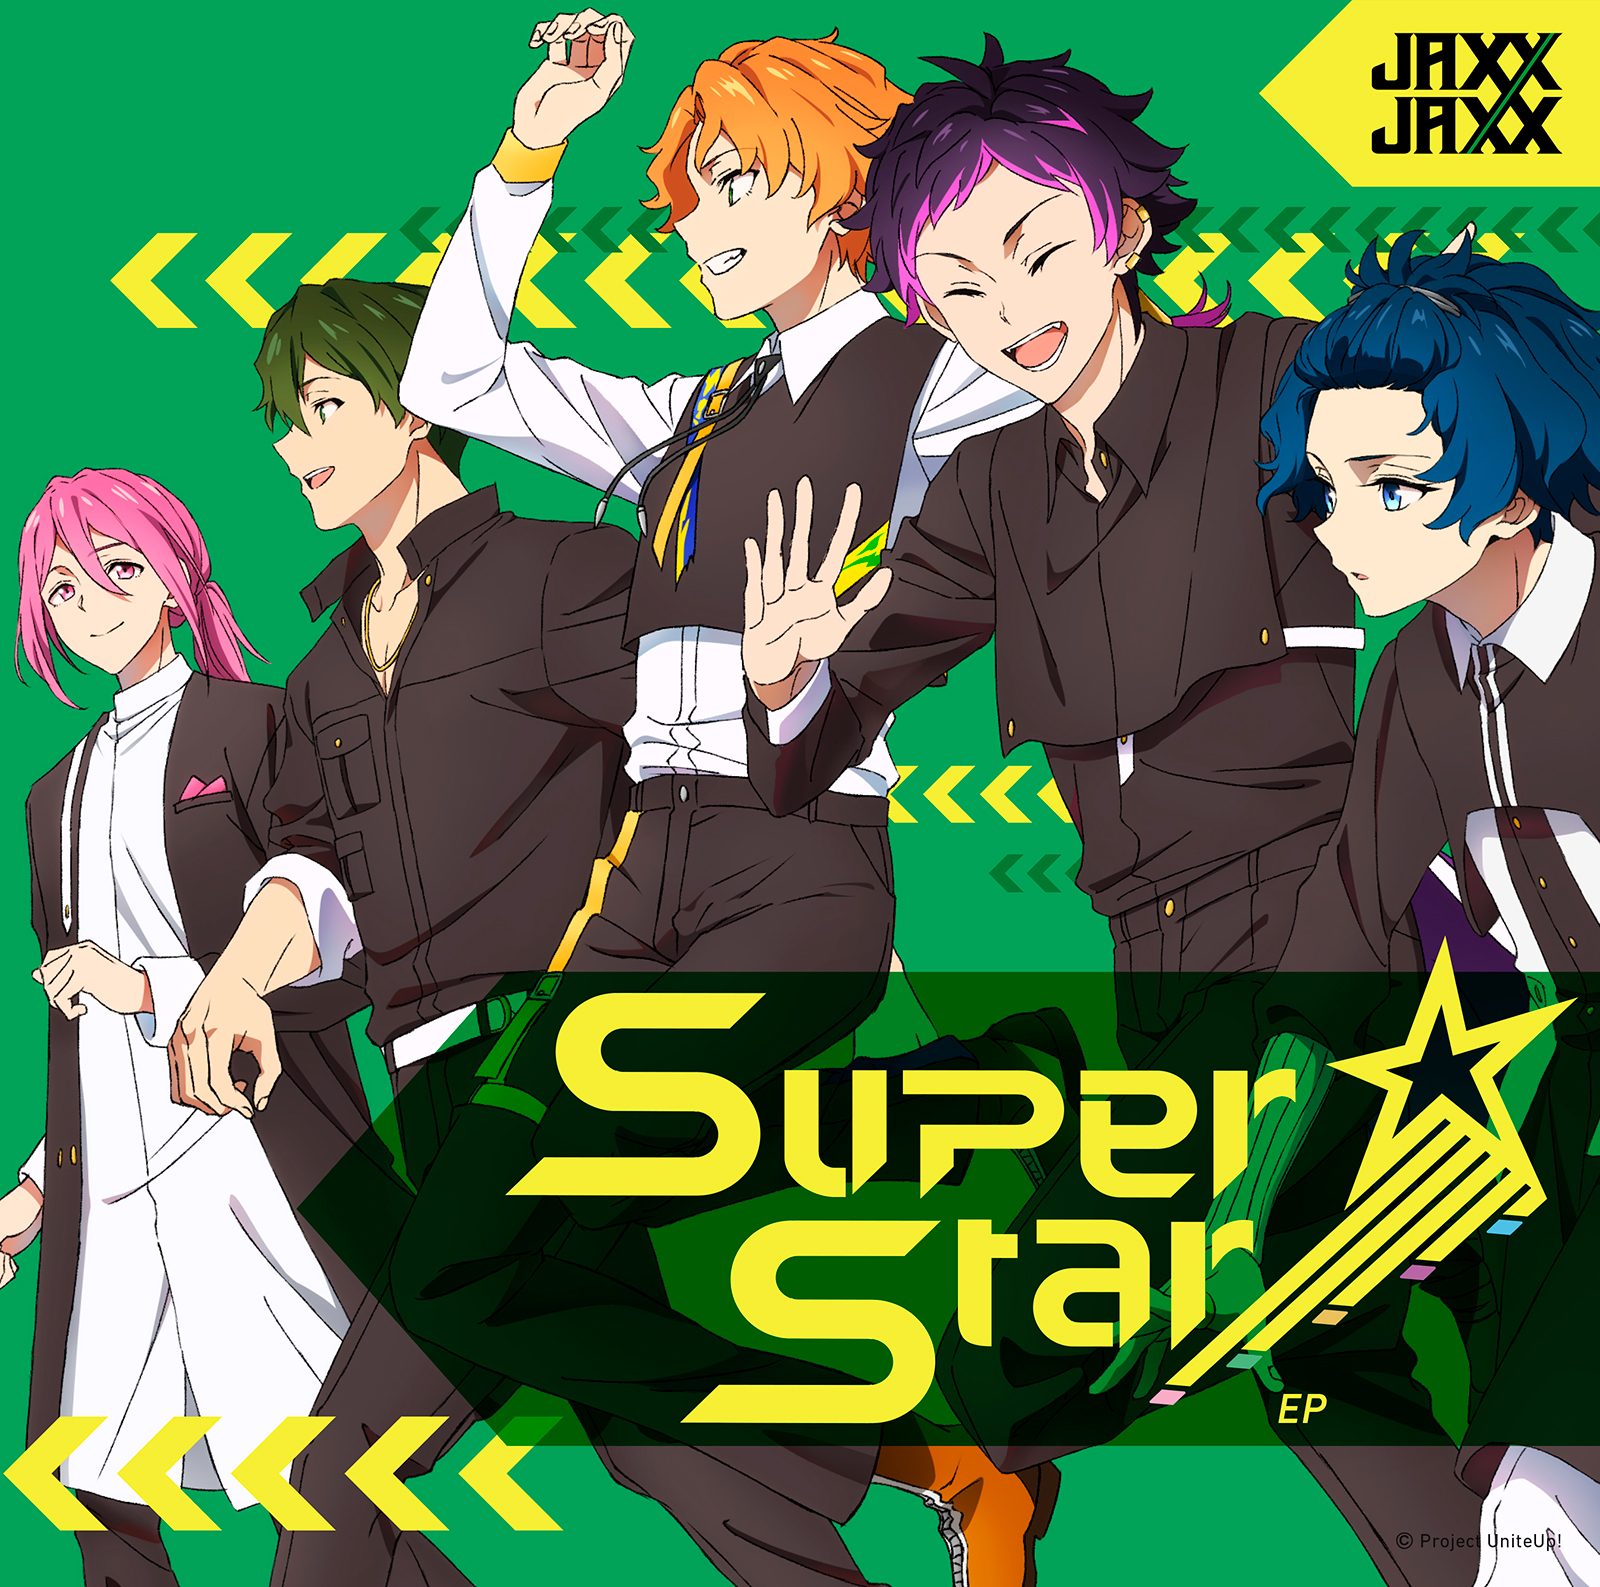 TVアニメ『UniteUp!』バンドアイドル・JAXX/JAXXが紡ぐ夢の始まり―masa、熊谷和海（BURNOUT SYNDROMES）が手がけた楽曲が収録された『SuperStar EP』を紐解く